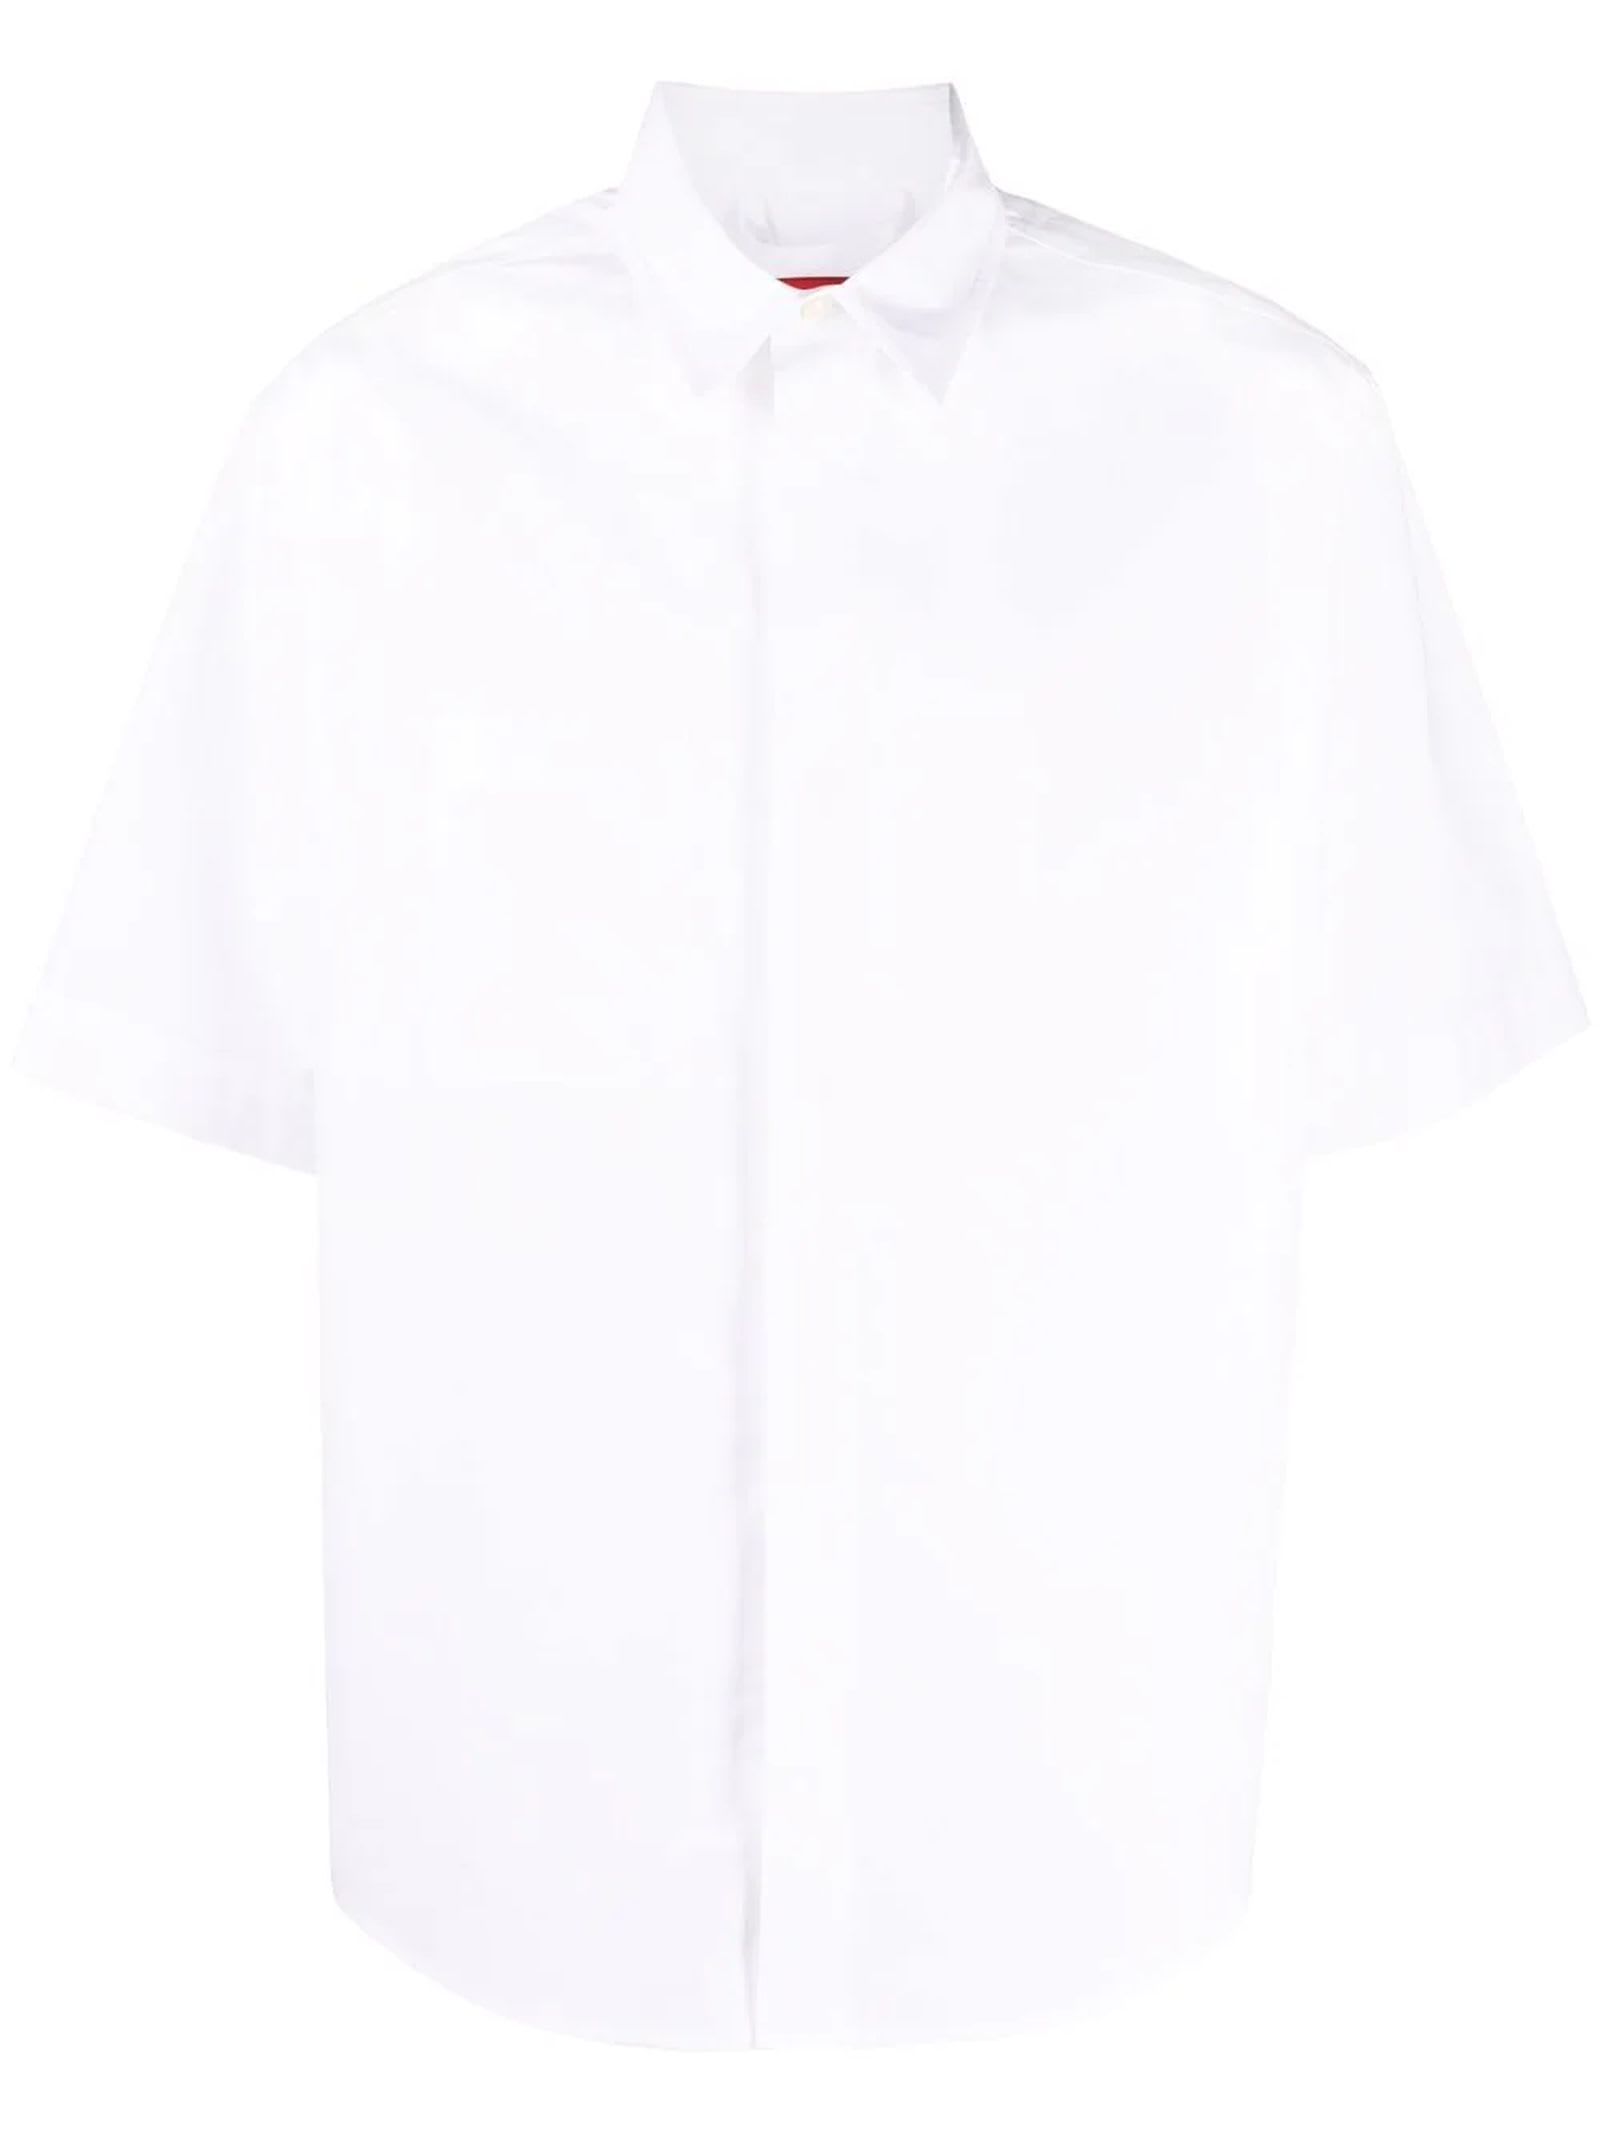 FourTwoFour on Fairfax White Cotton Shirt